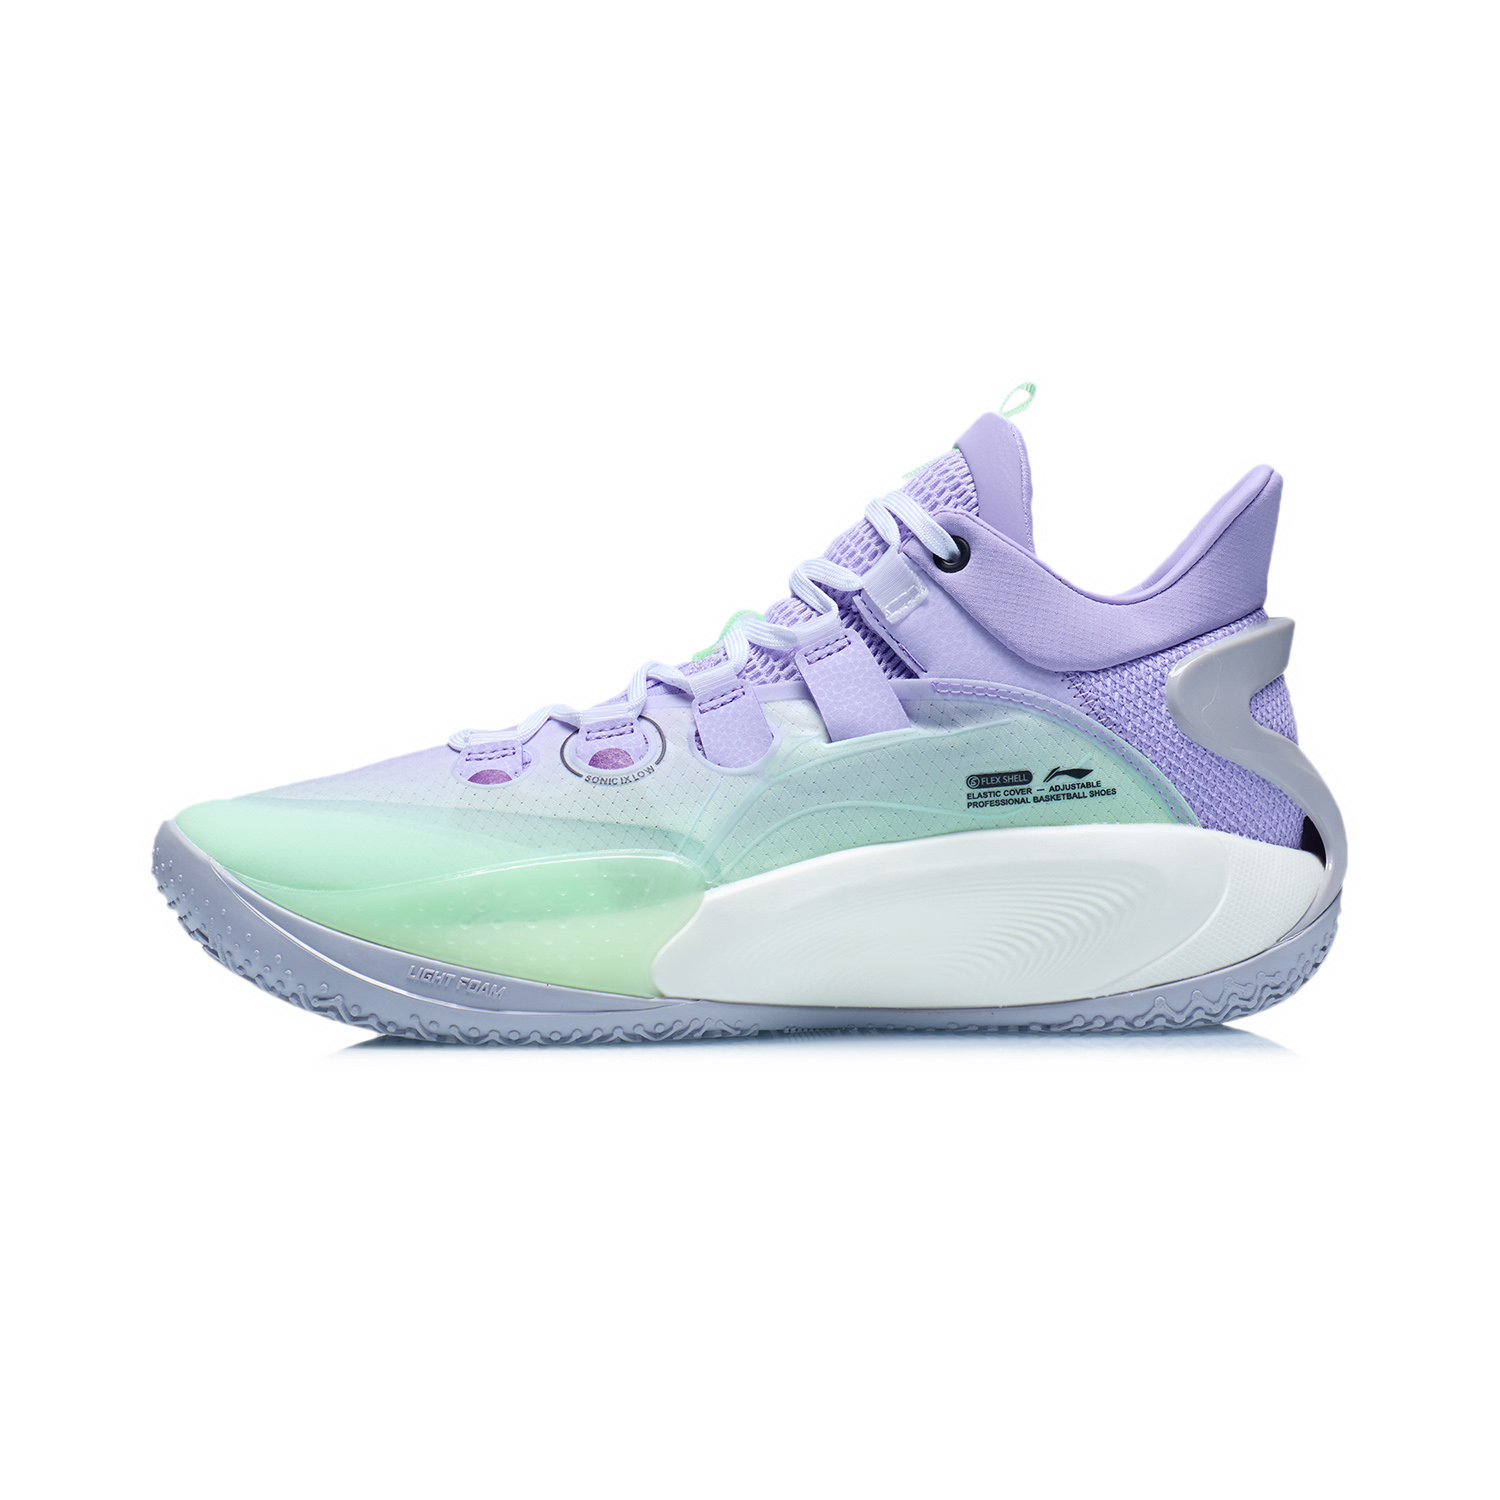 音速9 Low籃球專業比賽鞋 - 淡柔紫/螢光粉綠